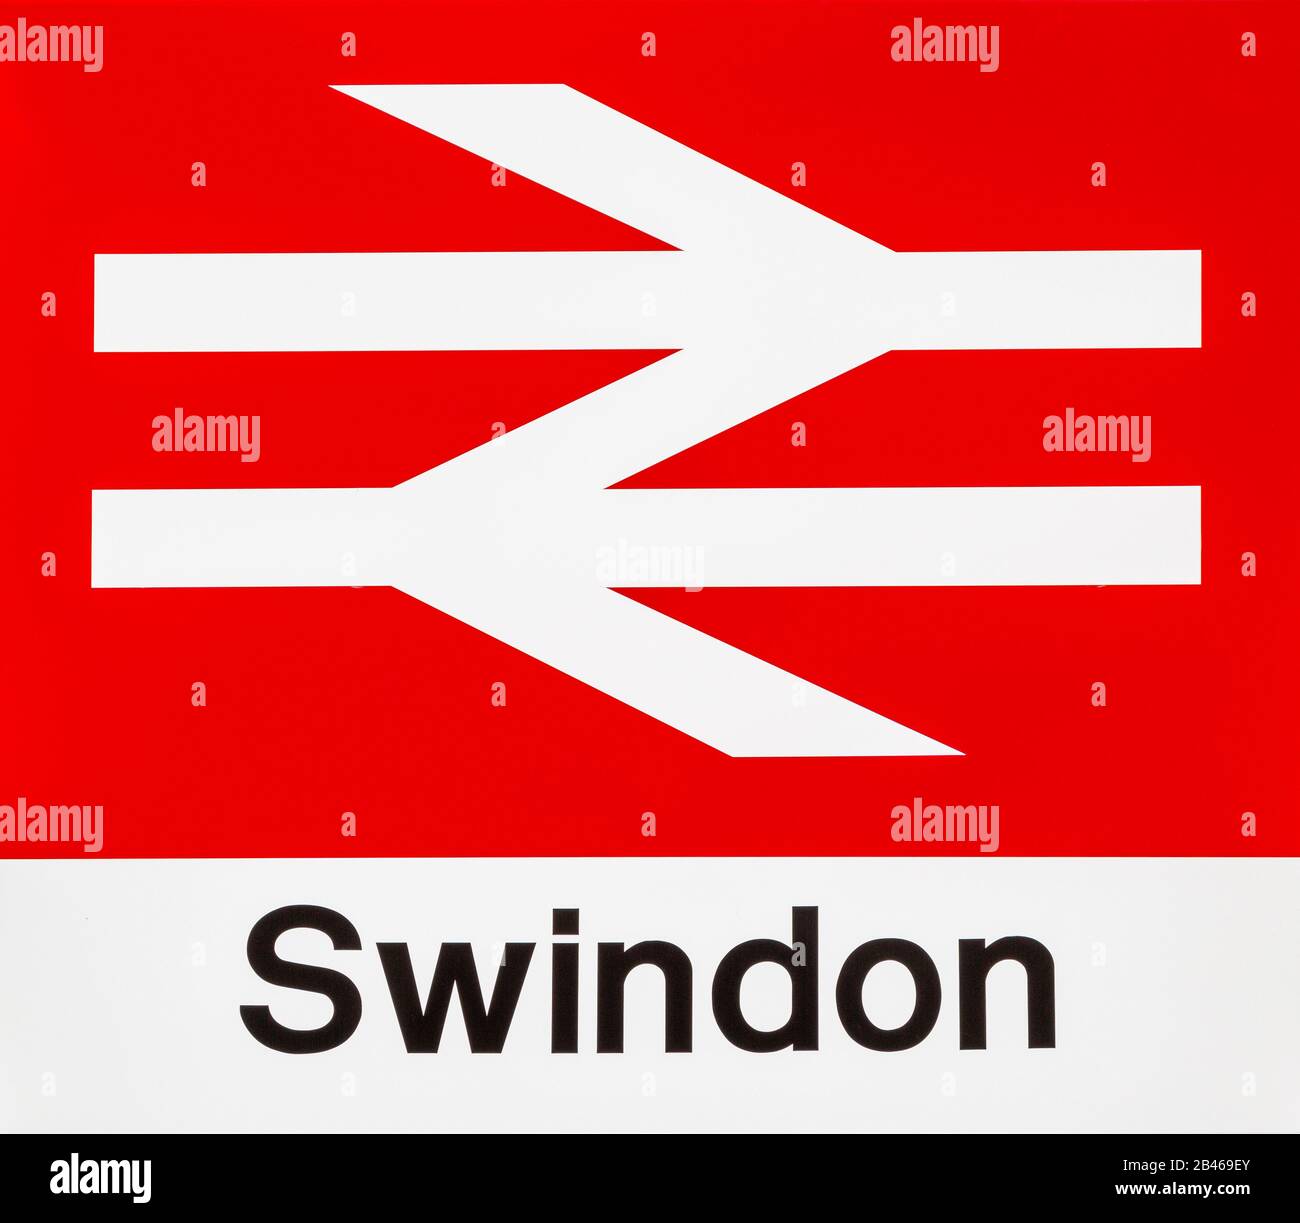 British Rail mit Doppelpfeil-Logo, entworfen von Gerry Barney, Bahnhof, Swindon, Wiltshire, England, Großbritannien Stockfoto